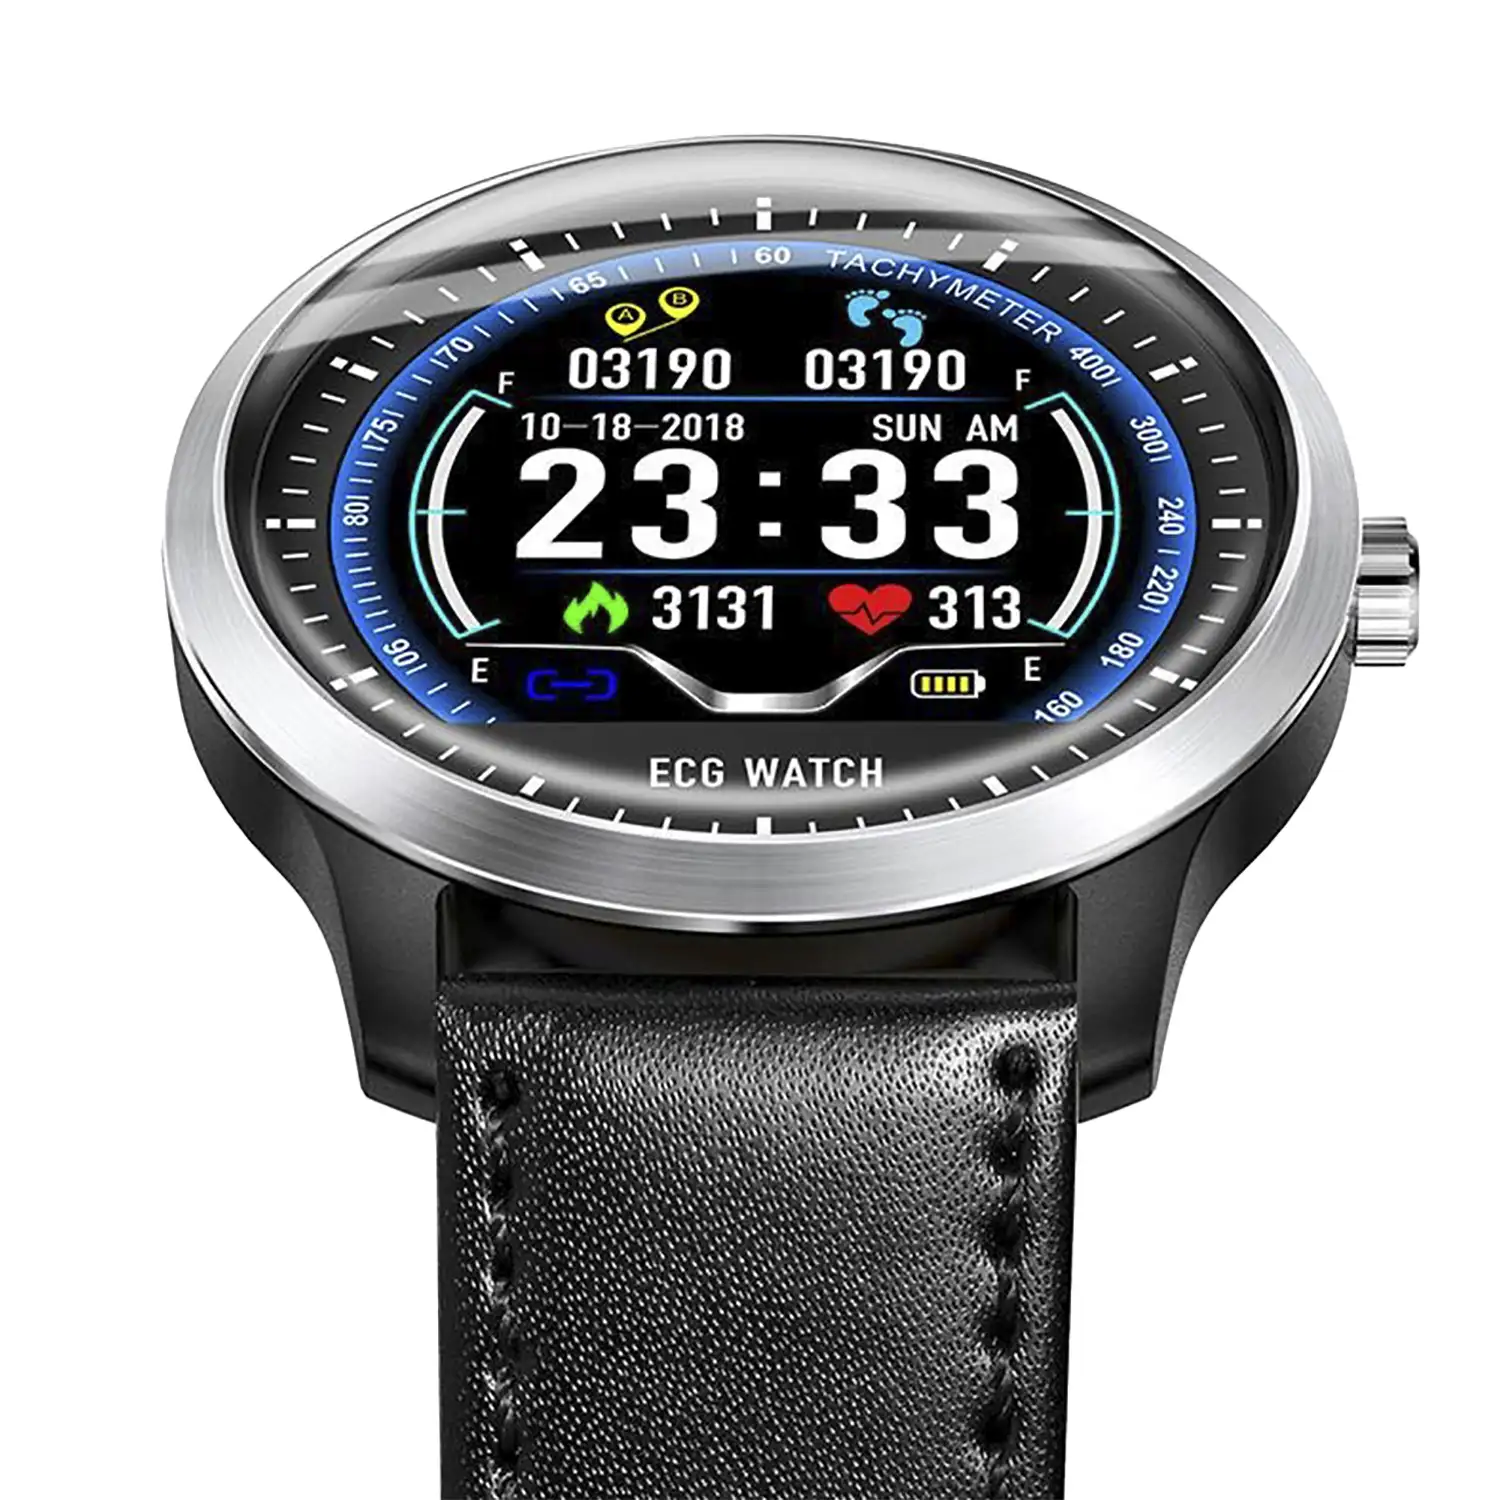 Smartwatch N58 con monitor cardíaco y notificaciones para iOS y Android